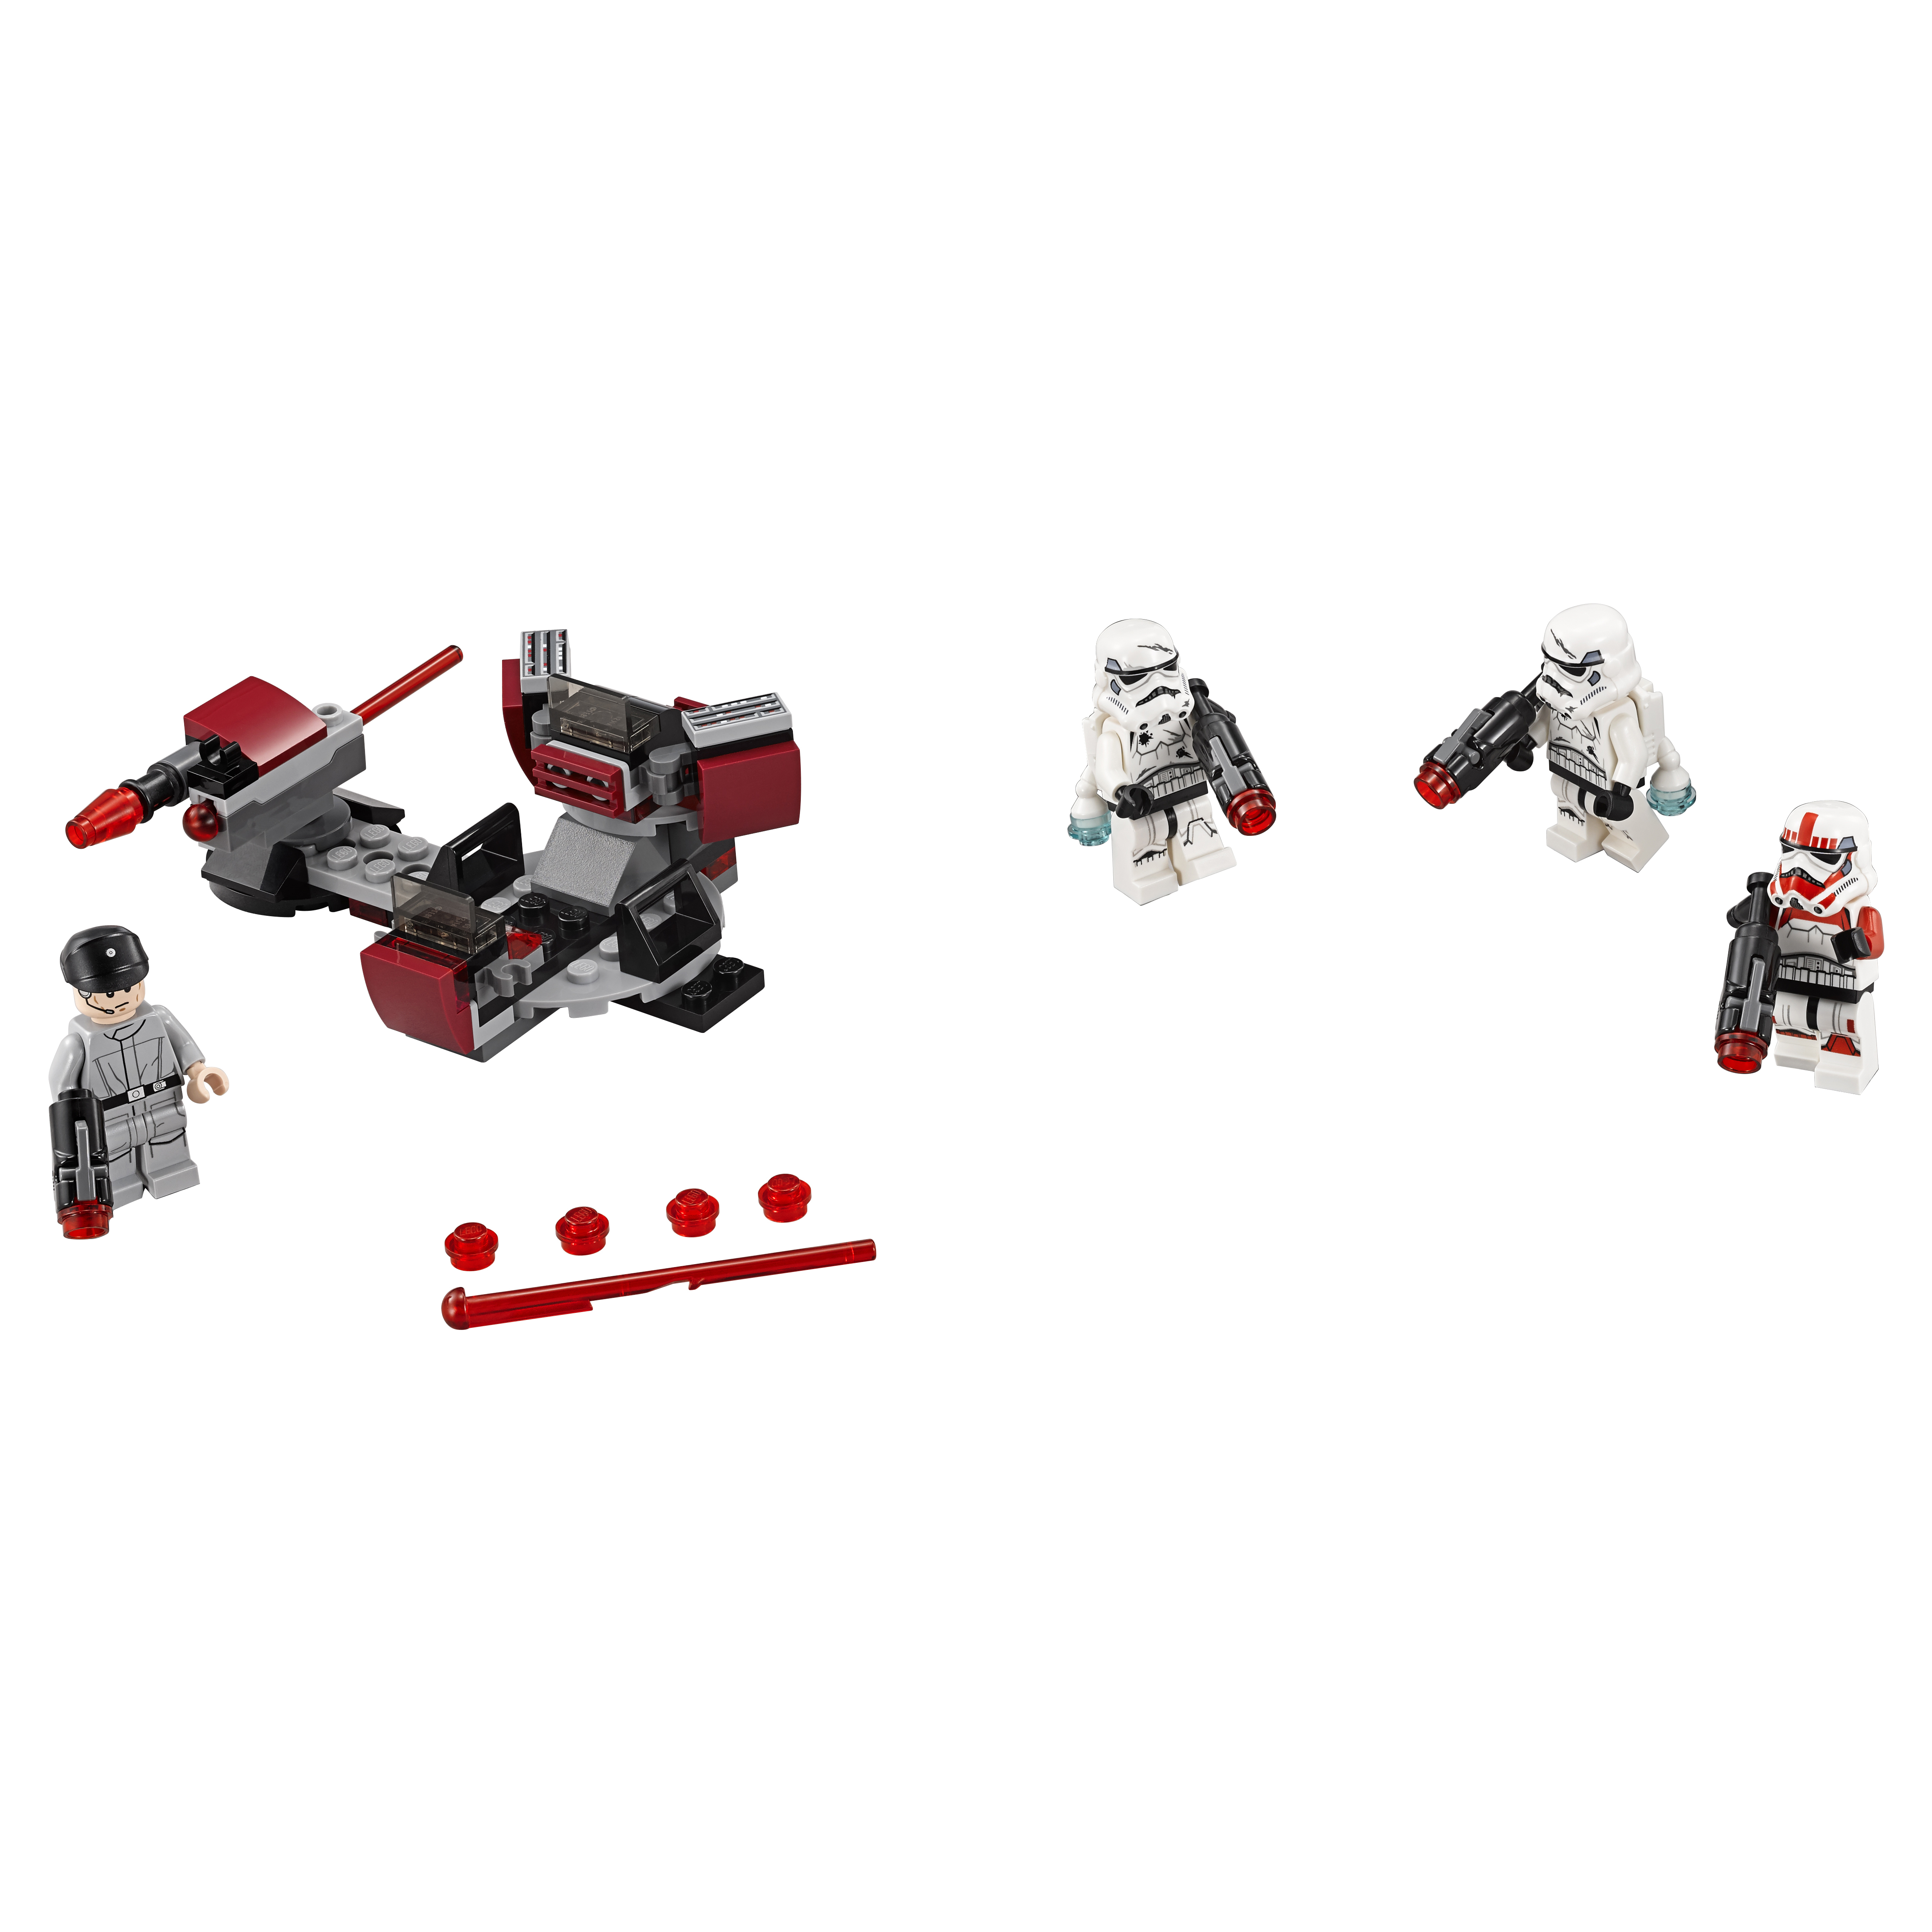 Конструктор LEGO Star Wars Боевой набор Галактической Империи (75134) конструктор lego star wars база повстанцев явин 4 1066 деталей 75365